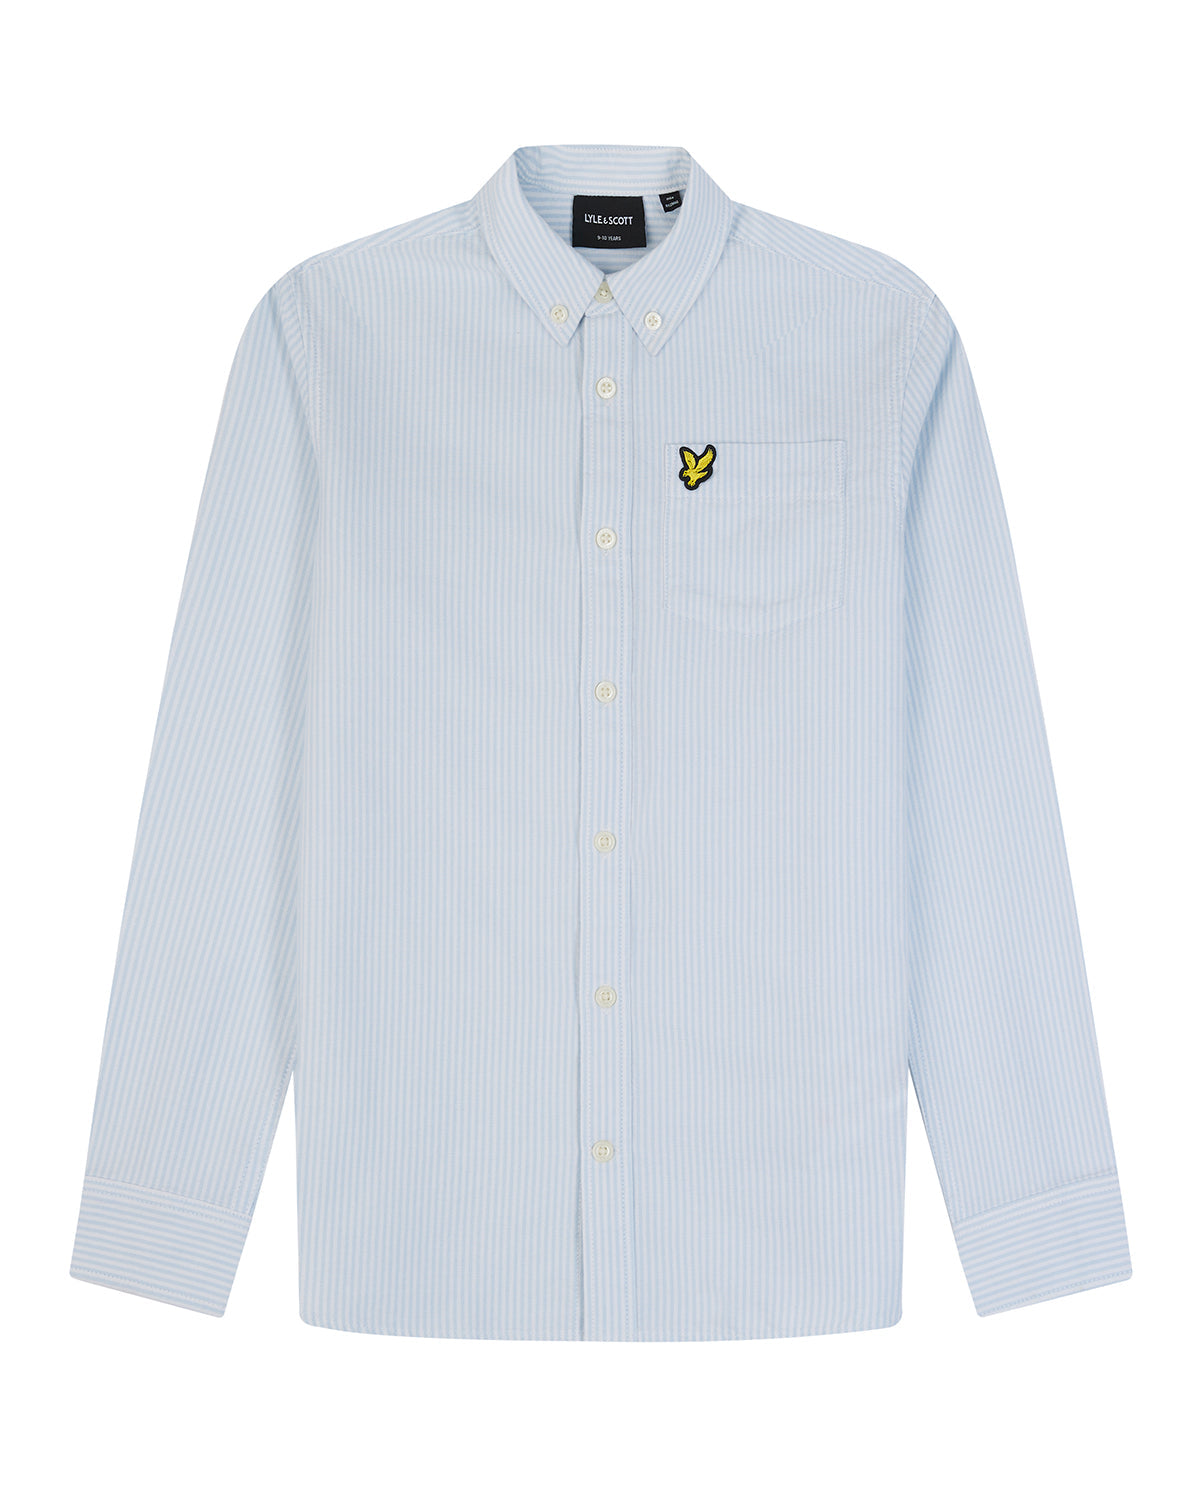 Jongens Stripe Oxford Shirt van Lyle & Scott in de kleur W490 Light Blue/ White in maat 170-176.